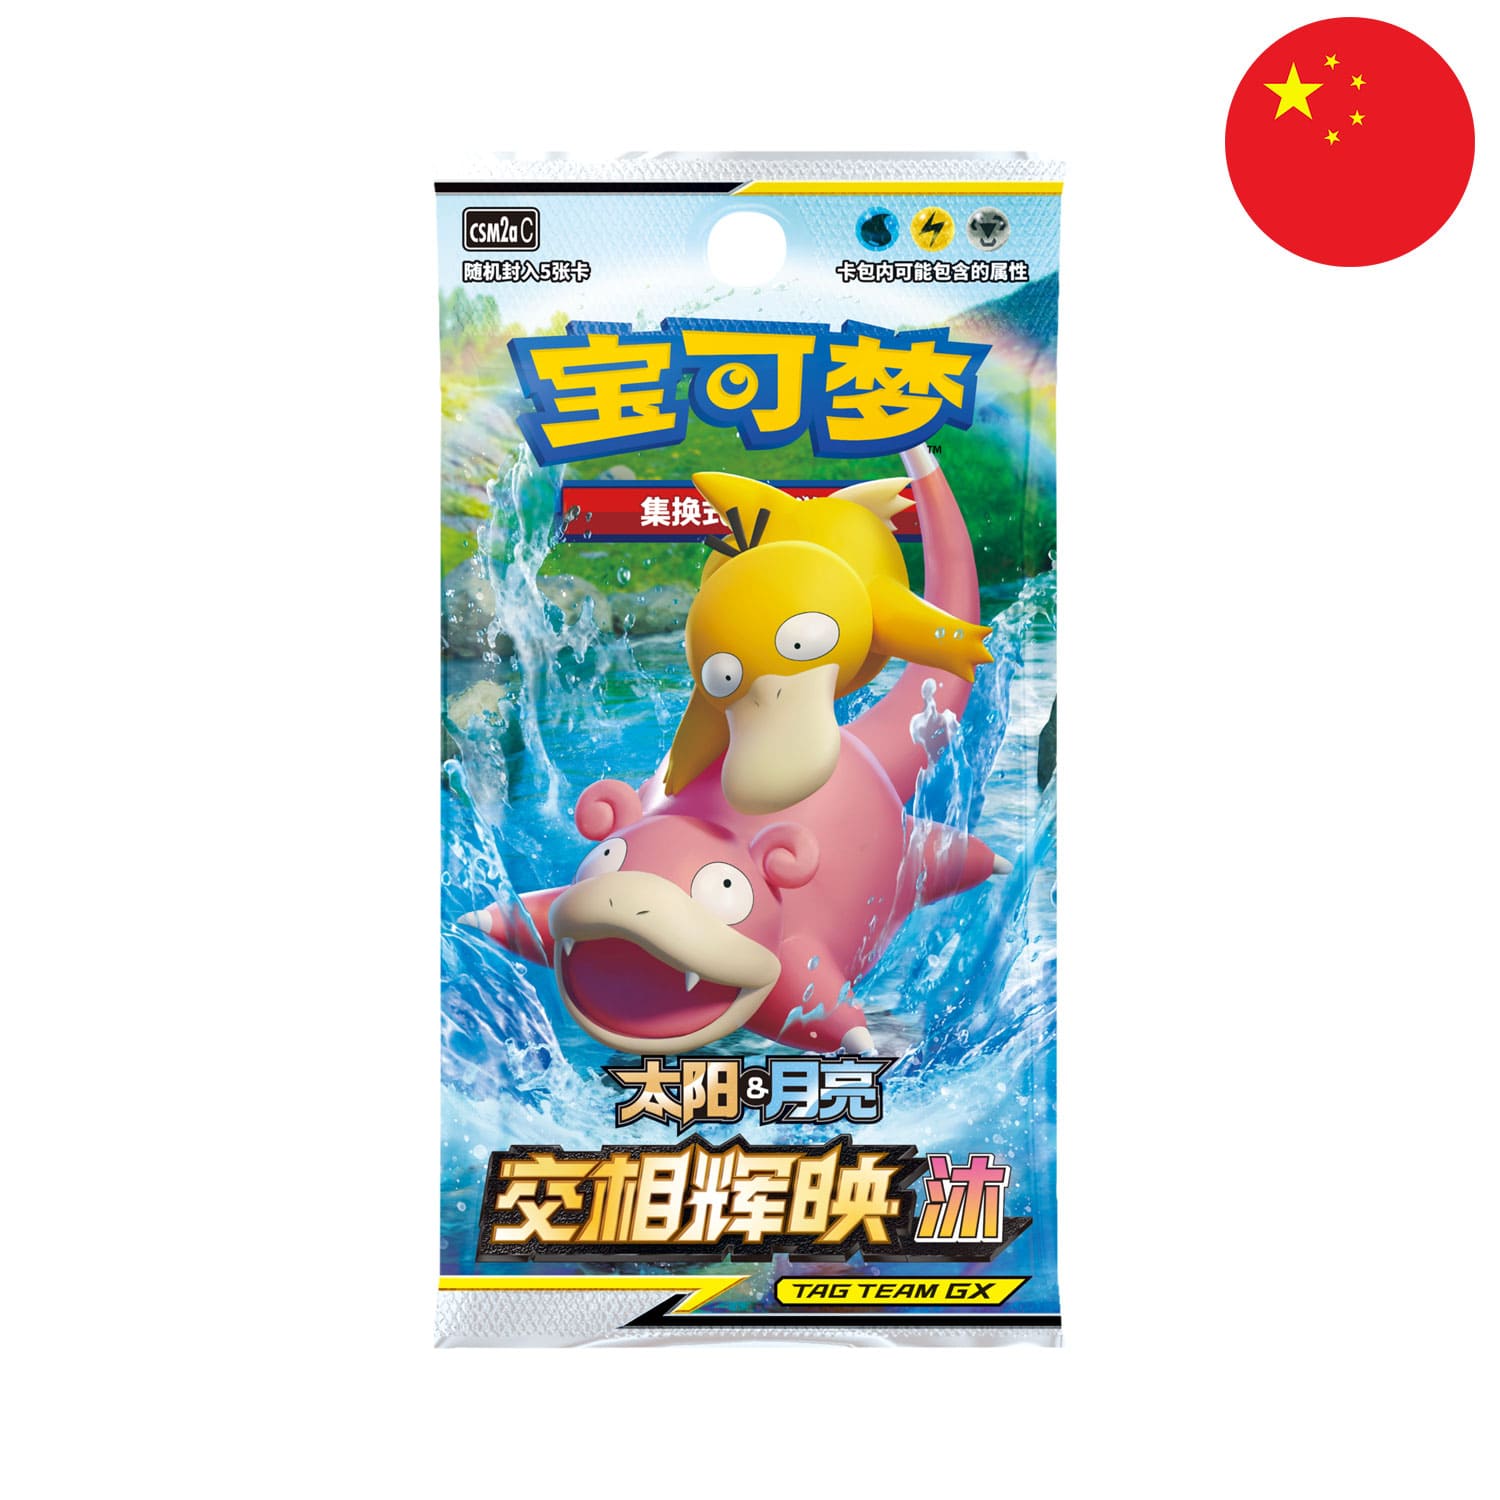 Das Pokemon Boosterpack Shining Synergy: Shower (CSM2a),als Scan mit Flegmon und Enton, mit der Flagge Chinas in der Ecke.